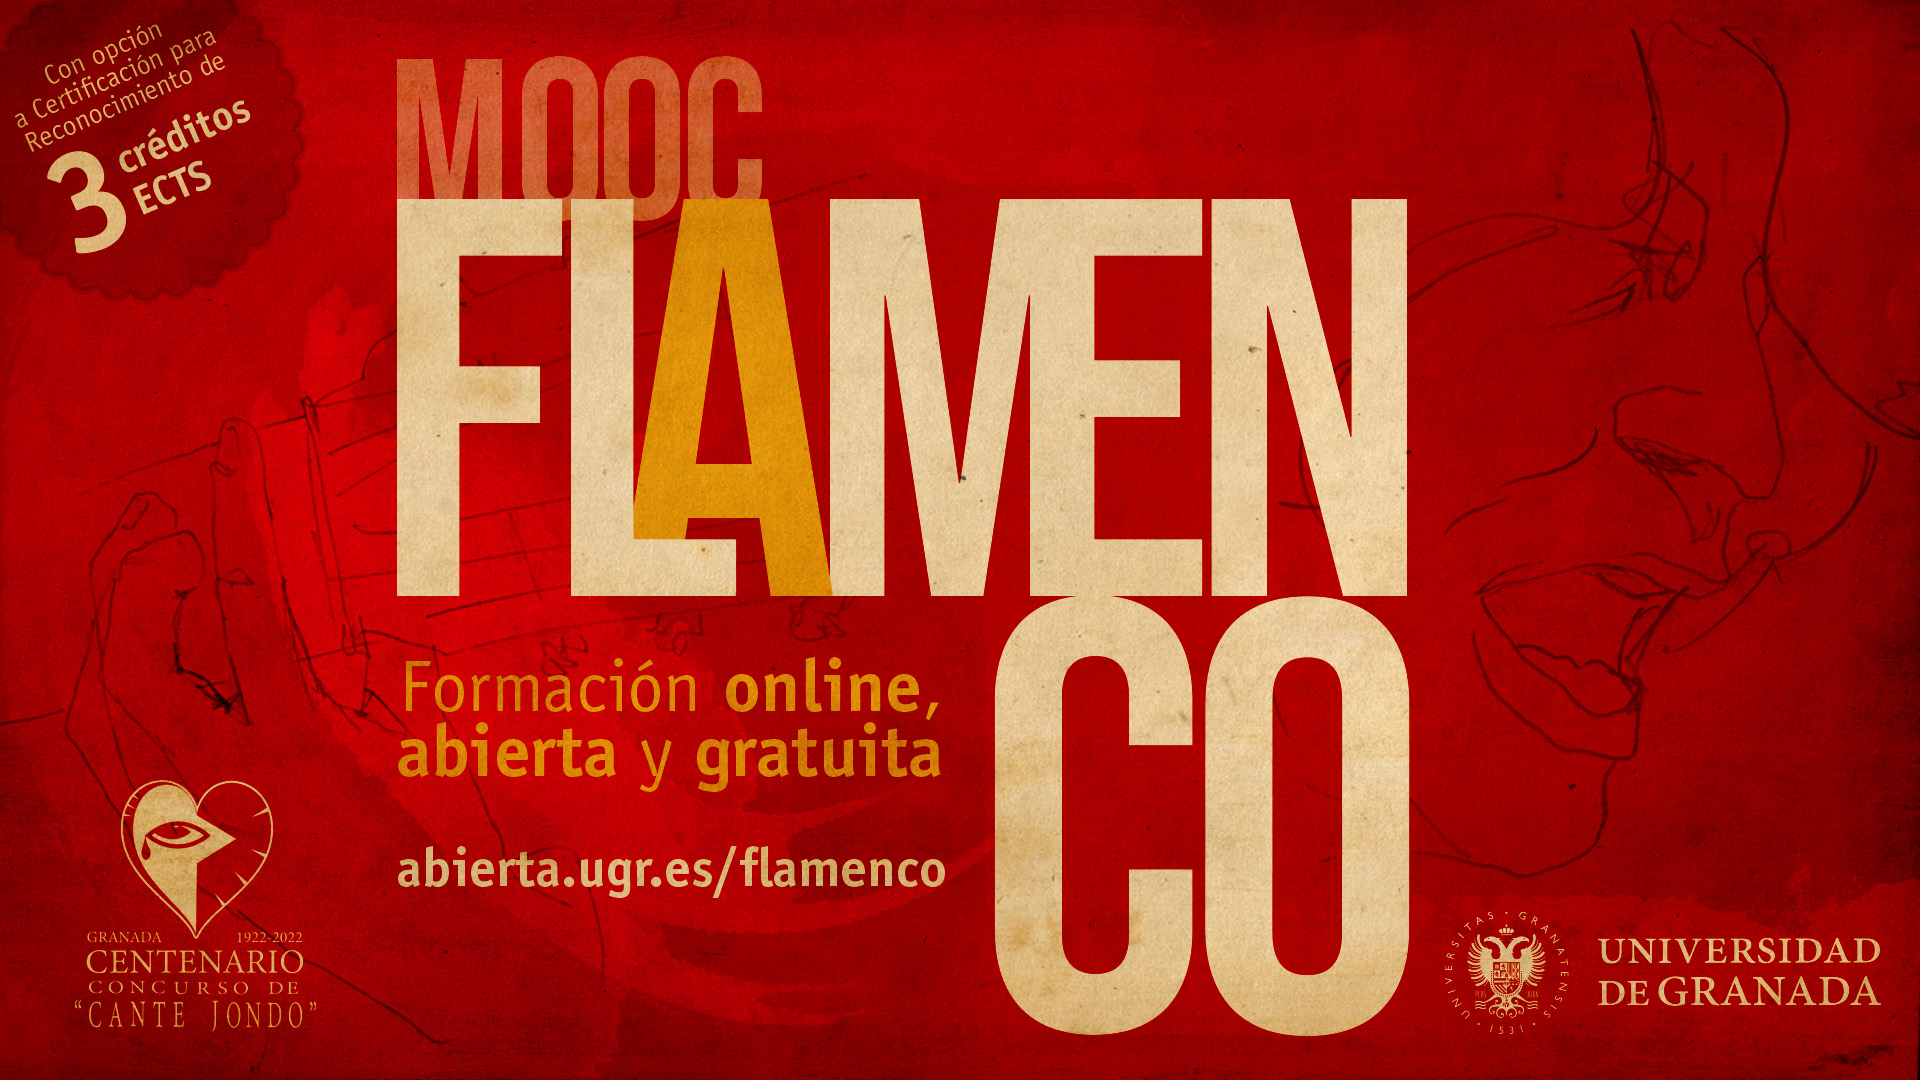 creatividad del Mooc dedicado al Flamenco